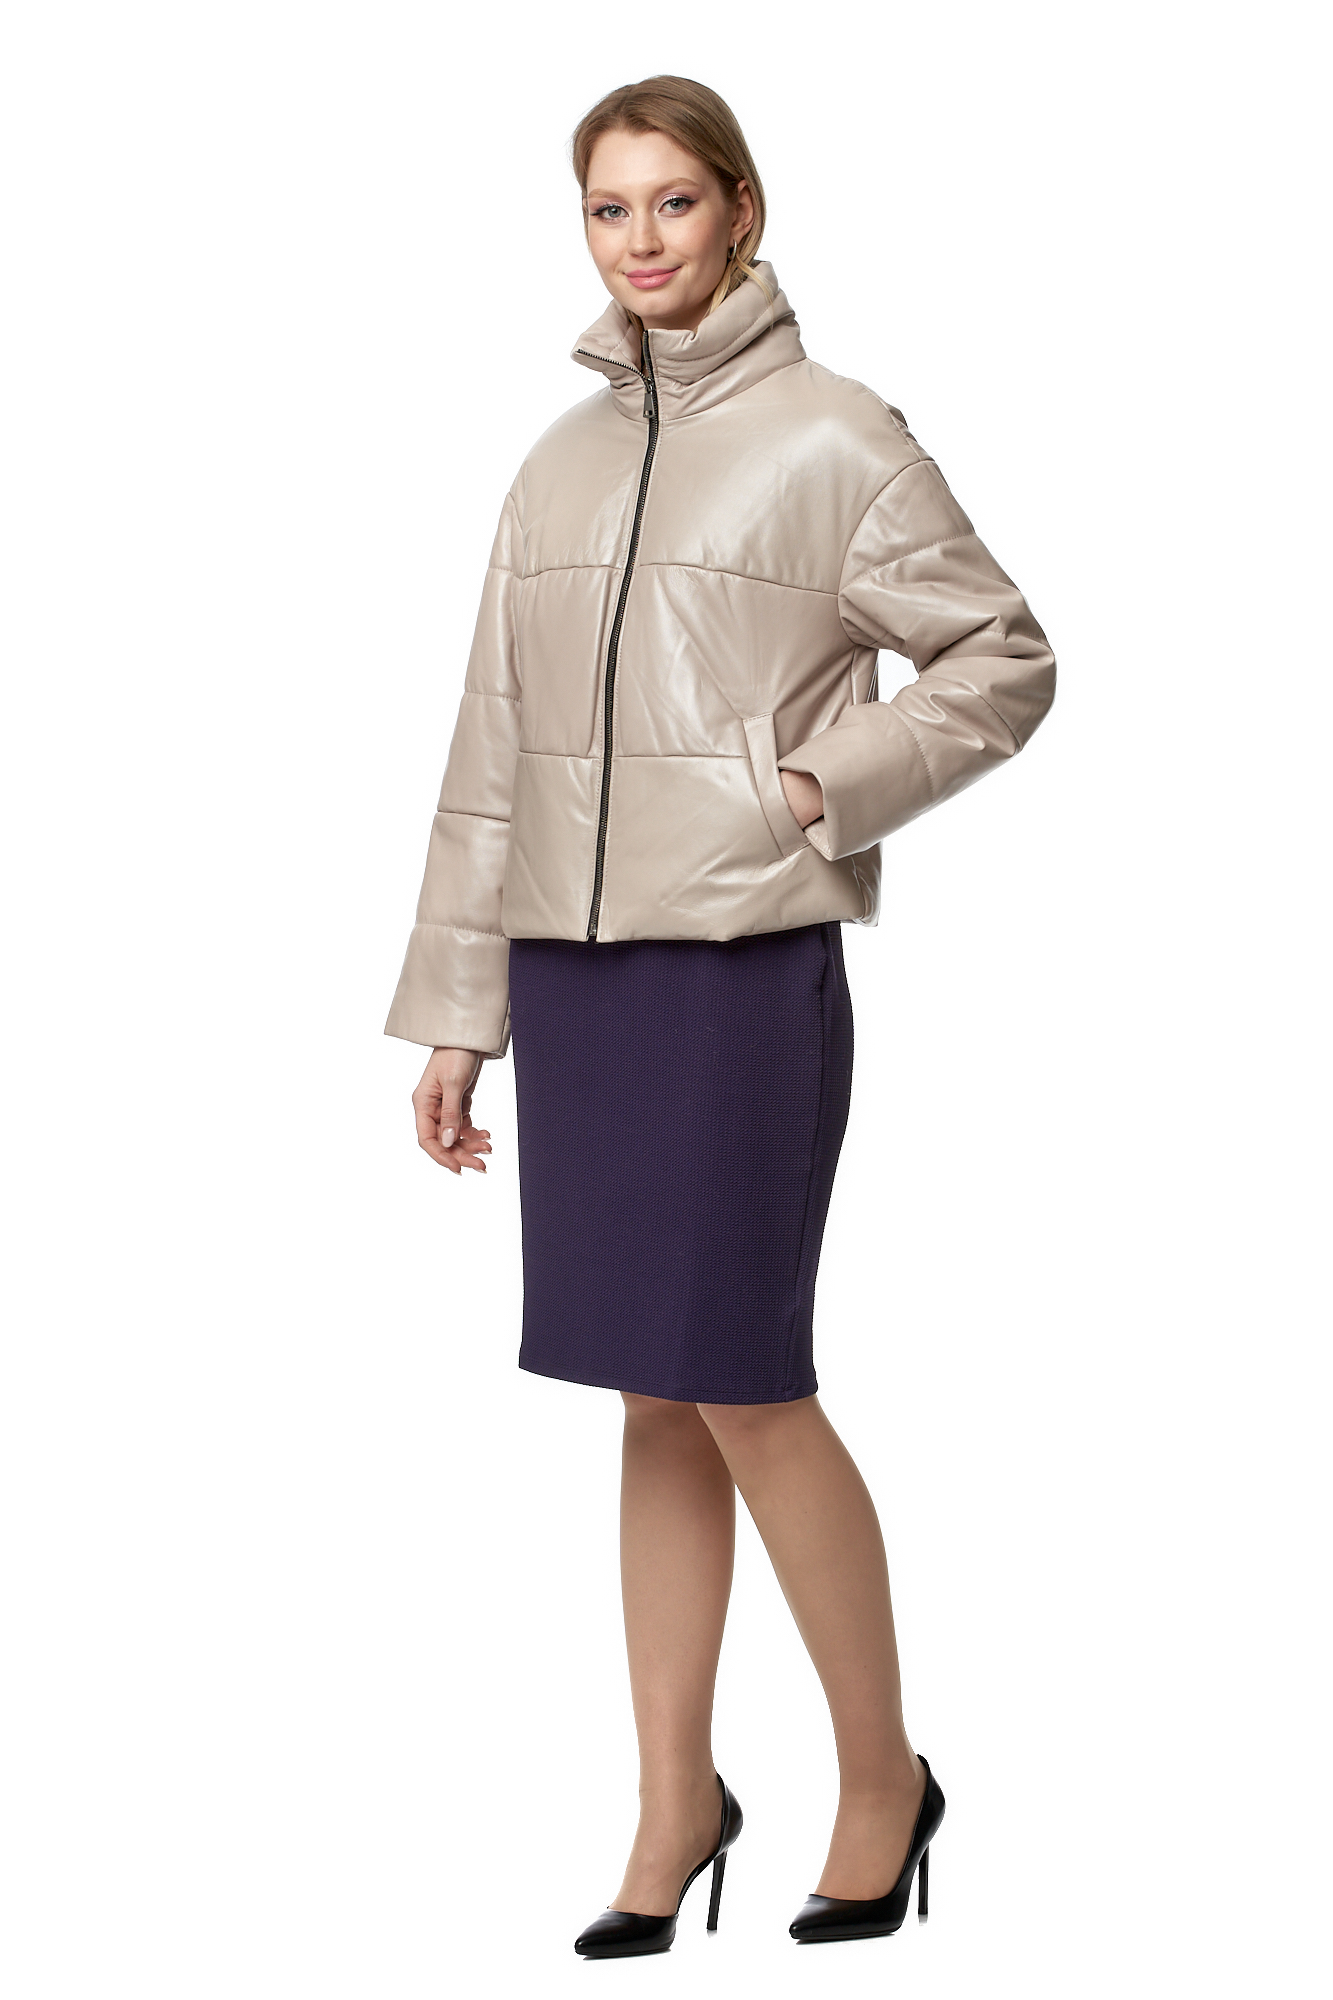 Кожаная куртка женская МОСМЕХА 8020806 бежевая 50 RU